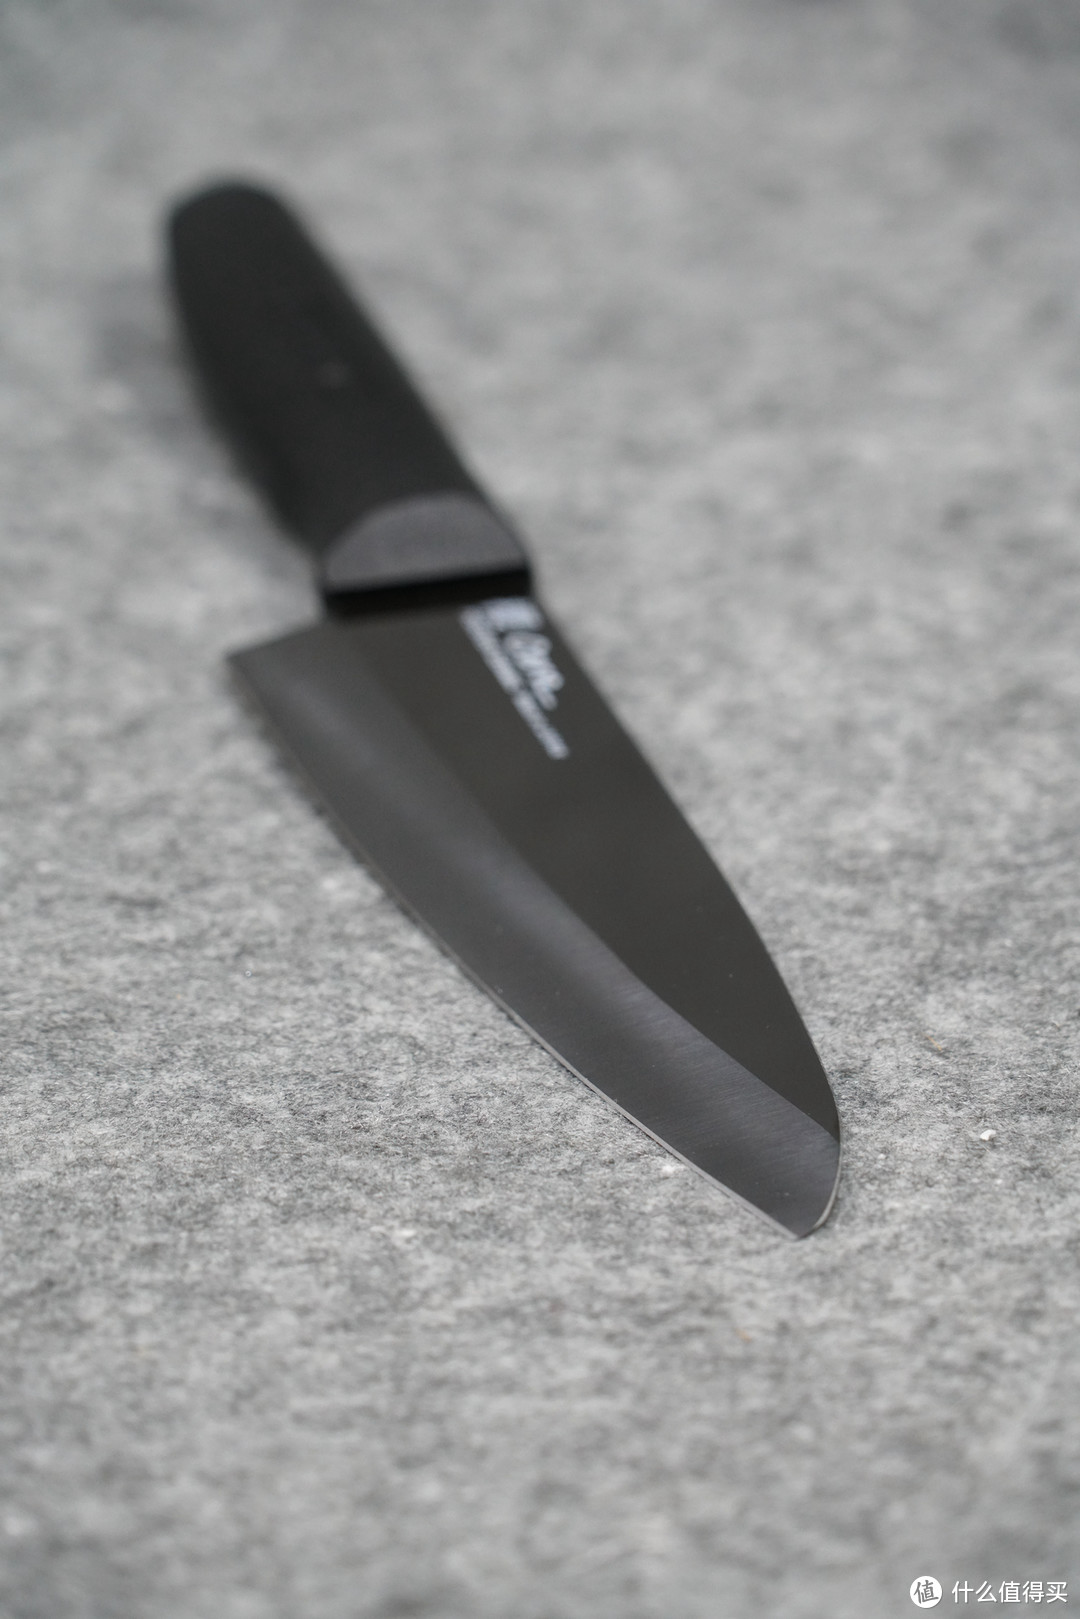 陶瓷刀选购和使用“十诫”：日本 FOREVER 陶瓷刀 樱花系列160mm 三德刀